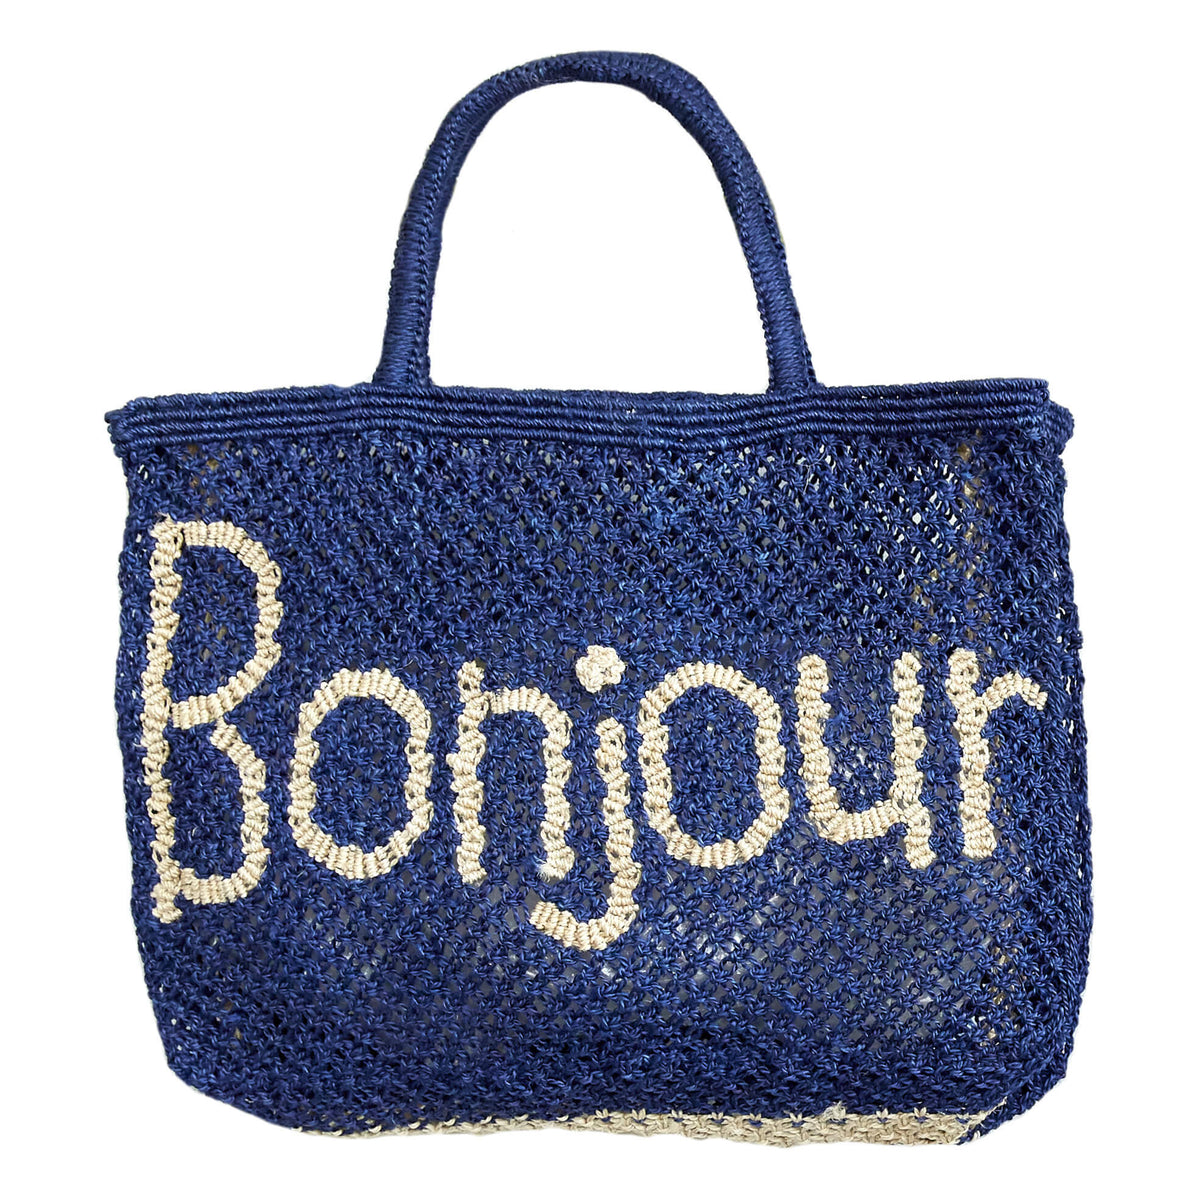 TJ Bonjour beach bag